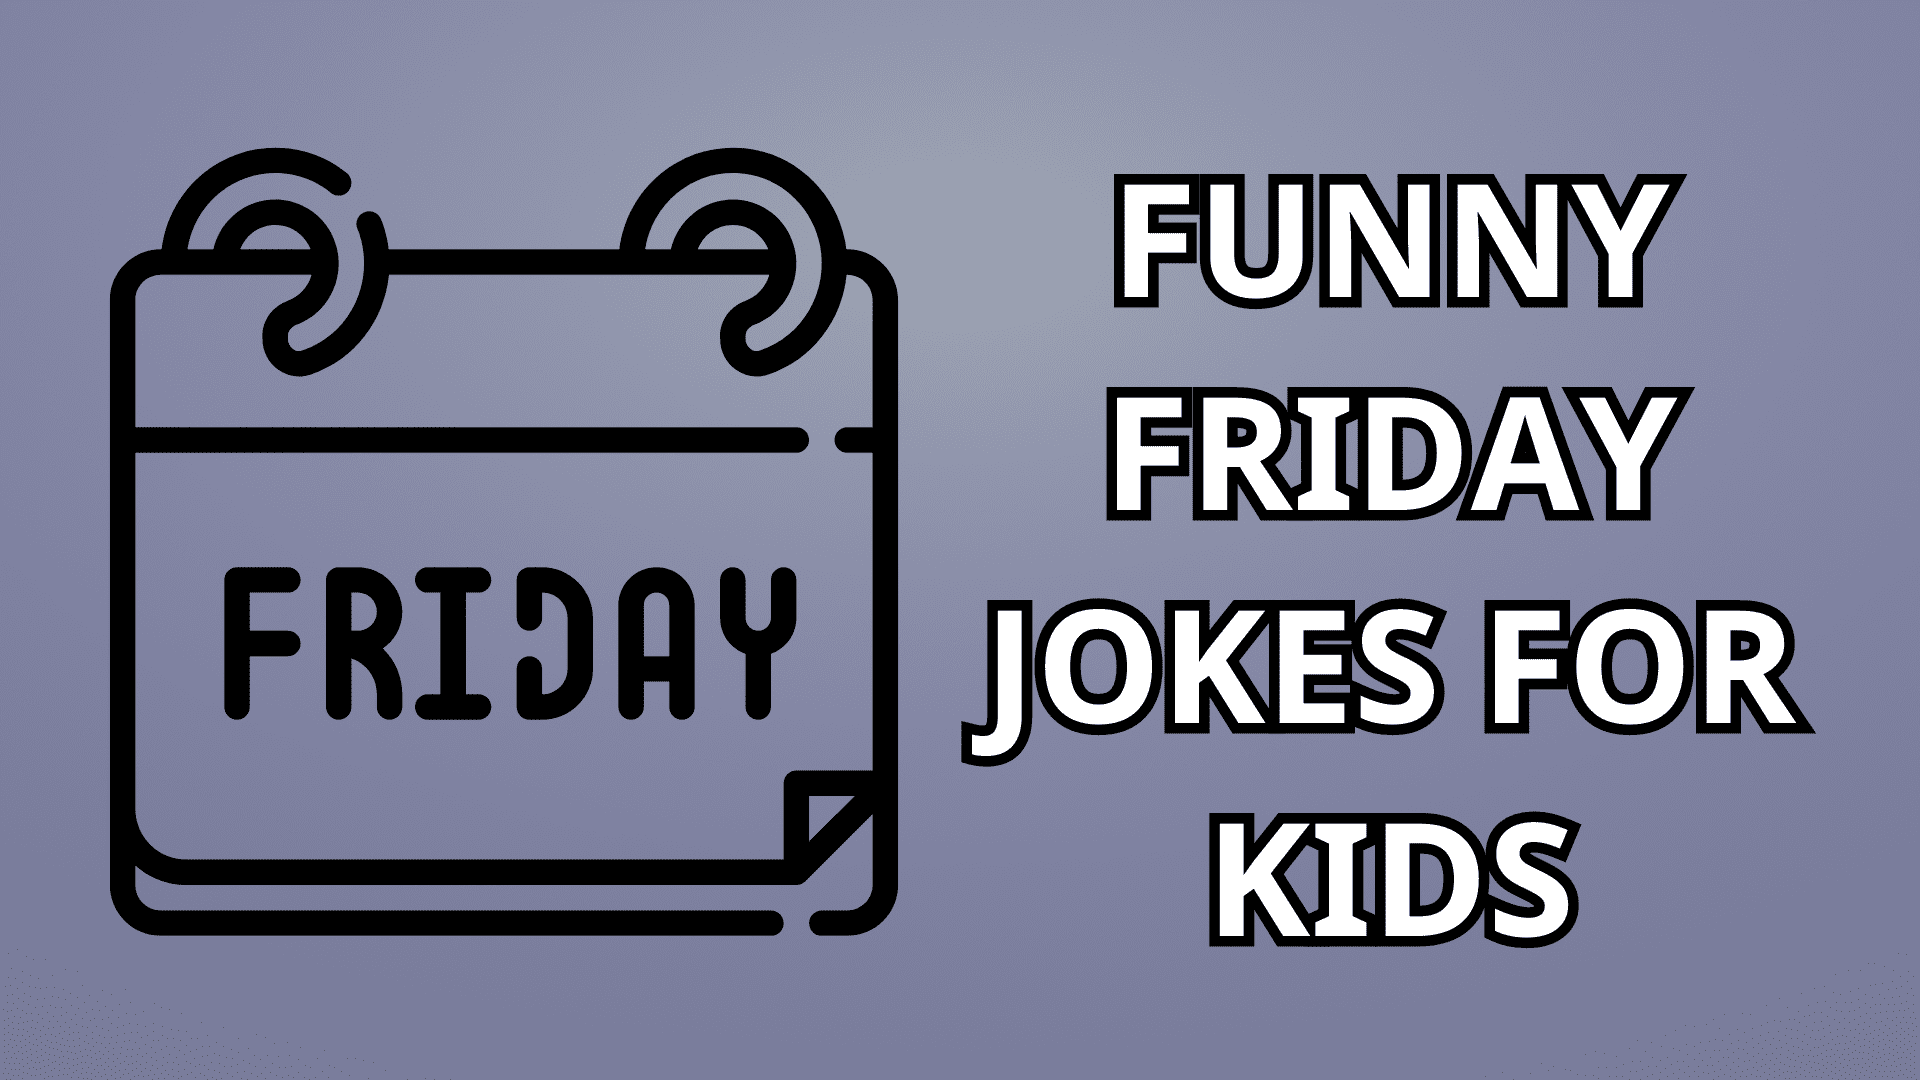 10 Funny Friday Jokes for Kids